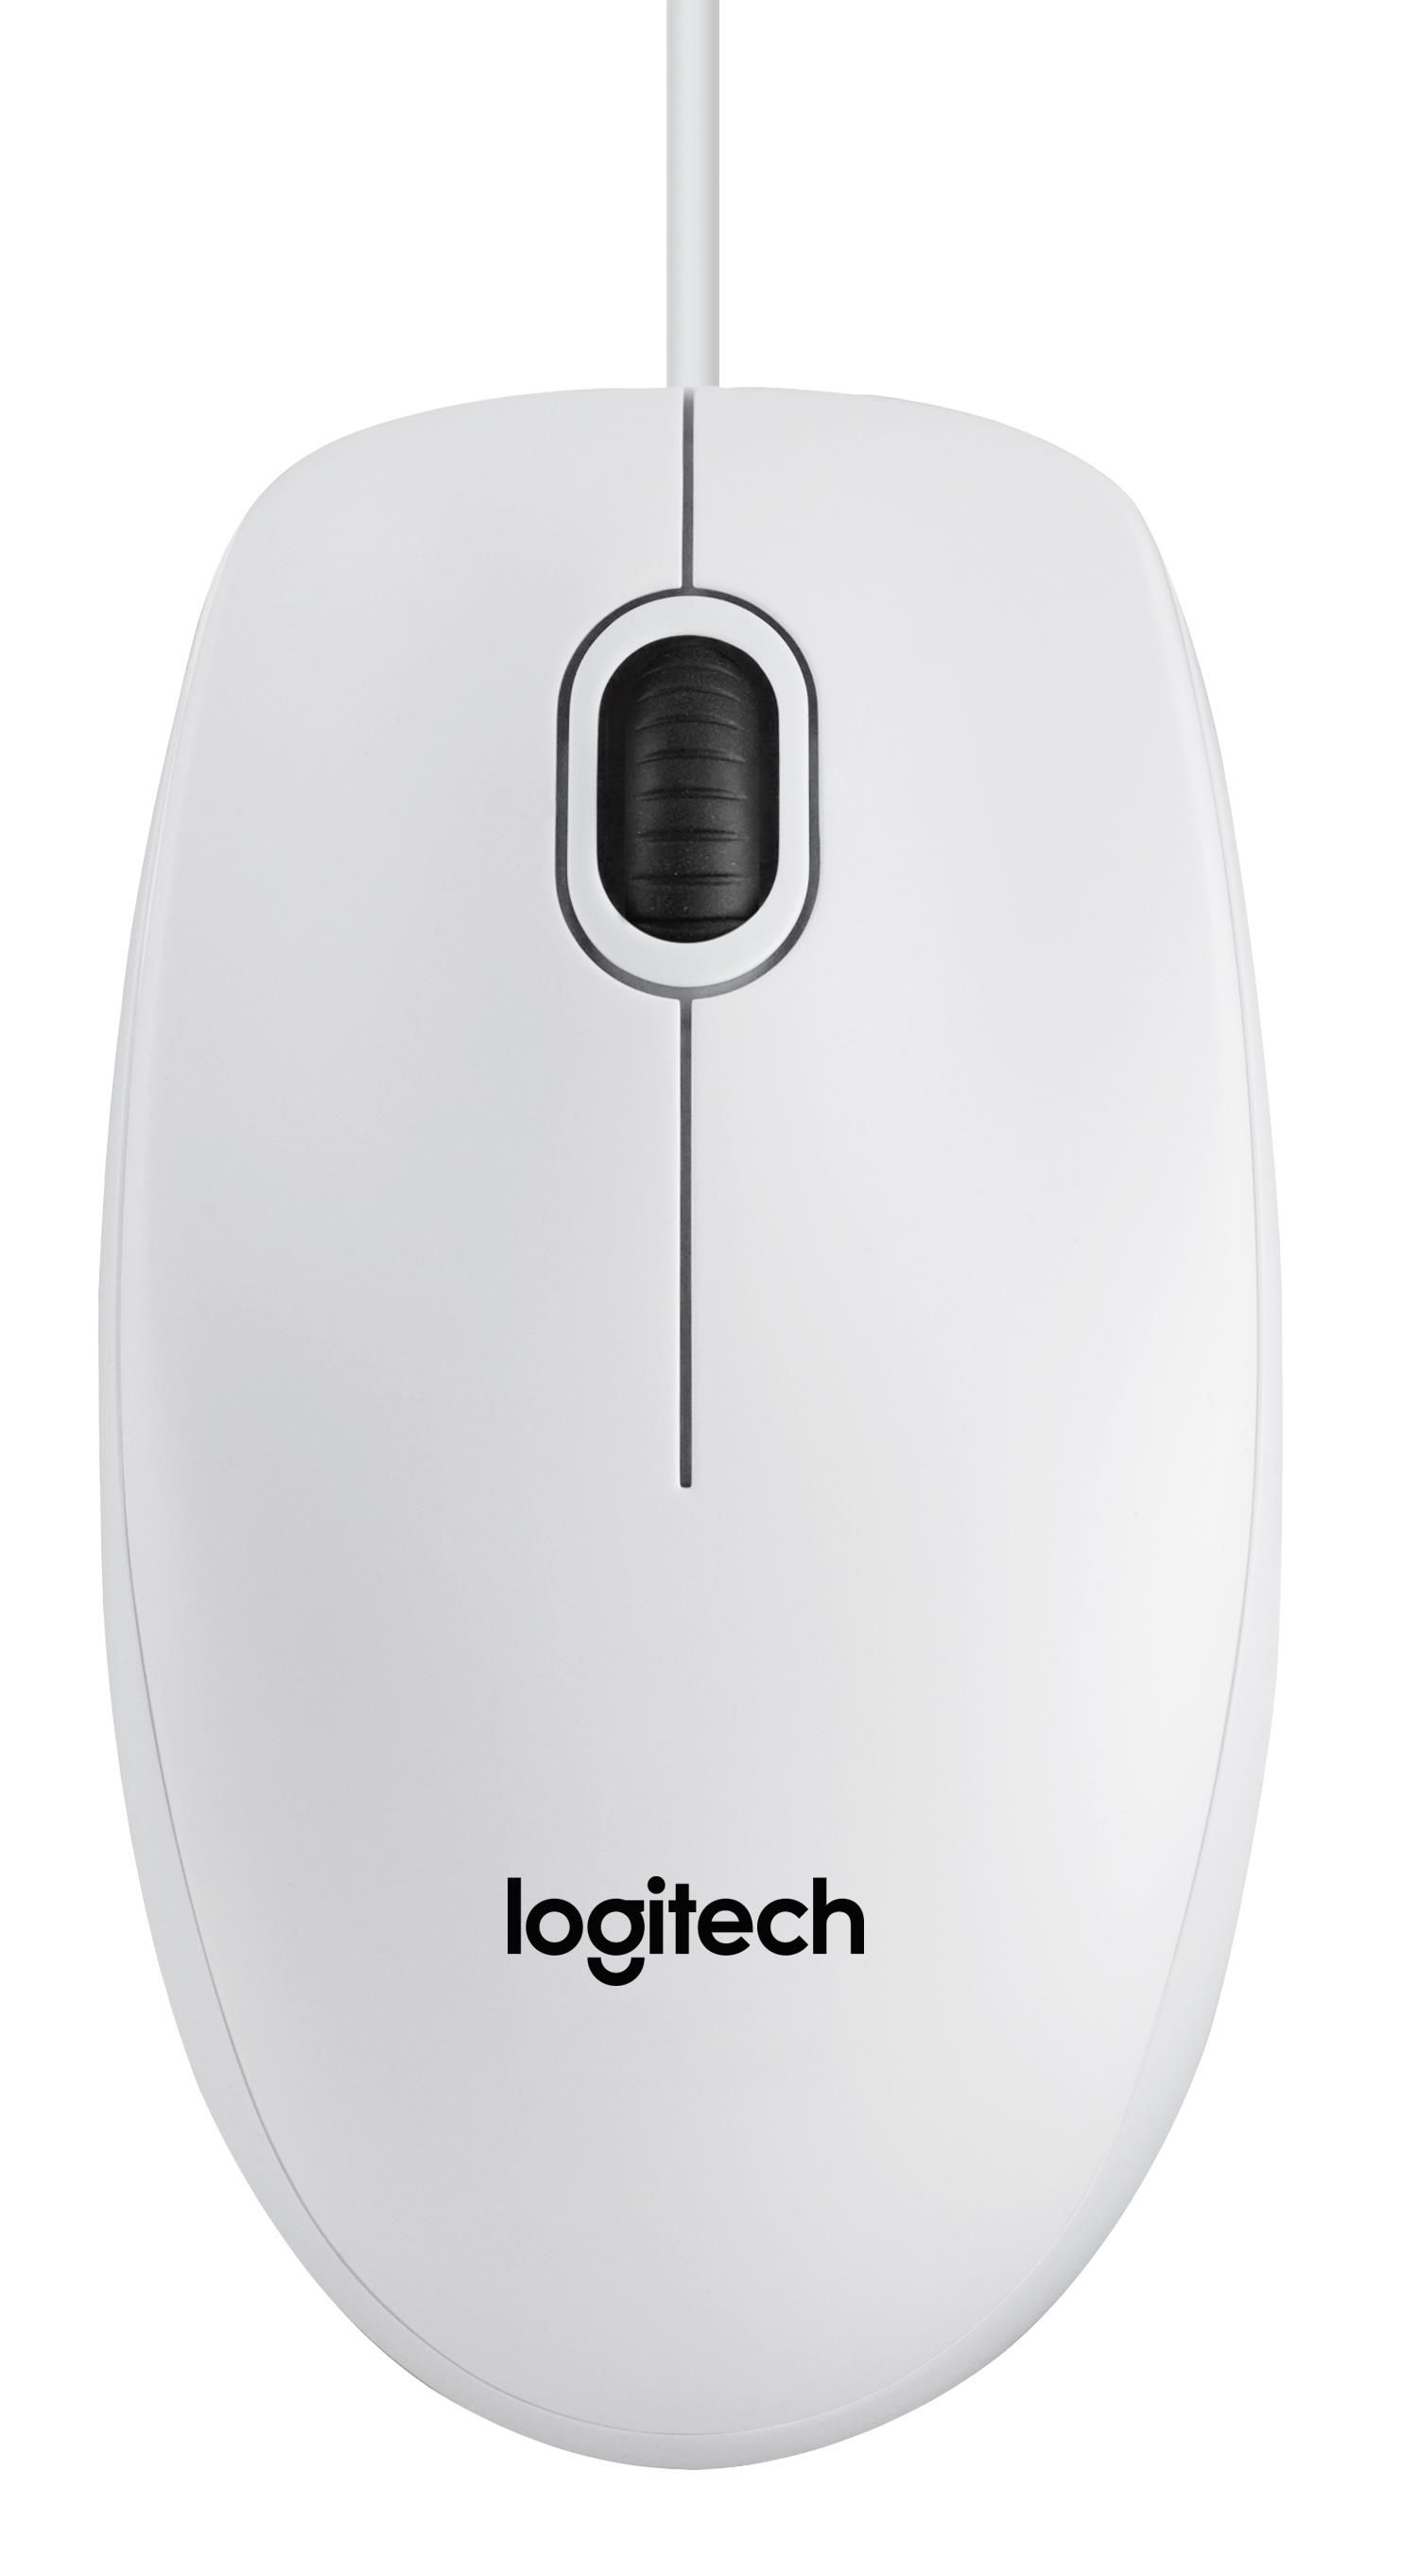 Logitech B100 Mouse White